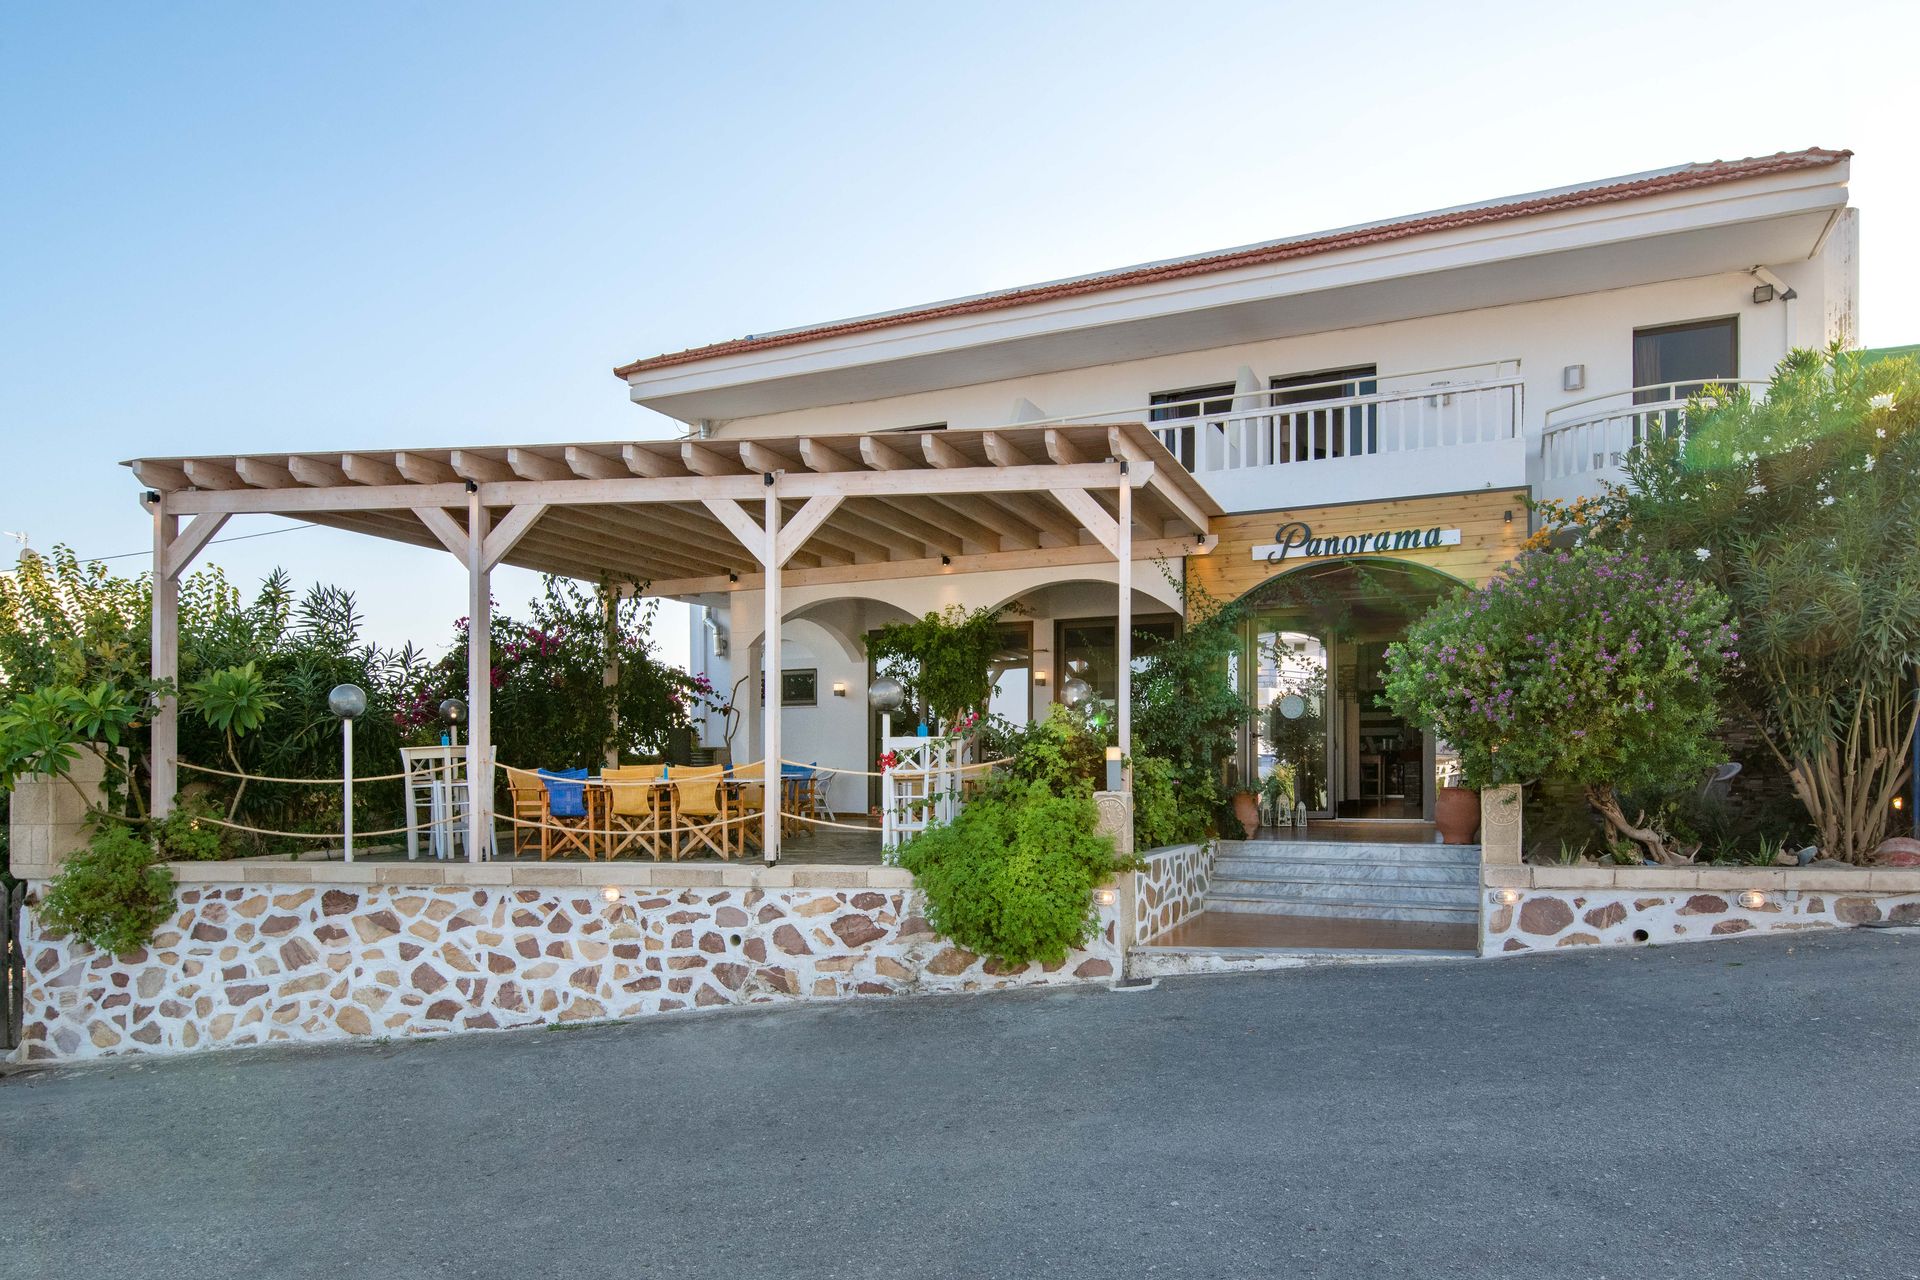 Panorama Gennadi Guest House &amp; Bistrot - Γεννάδι, Ρόδος ✦ 2 Ημέρες (1 Διανυκτέρευση) ✦ 2 άτομα ✦ Χωρίς Πρωινό ✦ 01/05/2022 έως 30/09/2022 ✦ Κοντά σε παραλία!